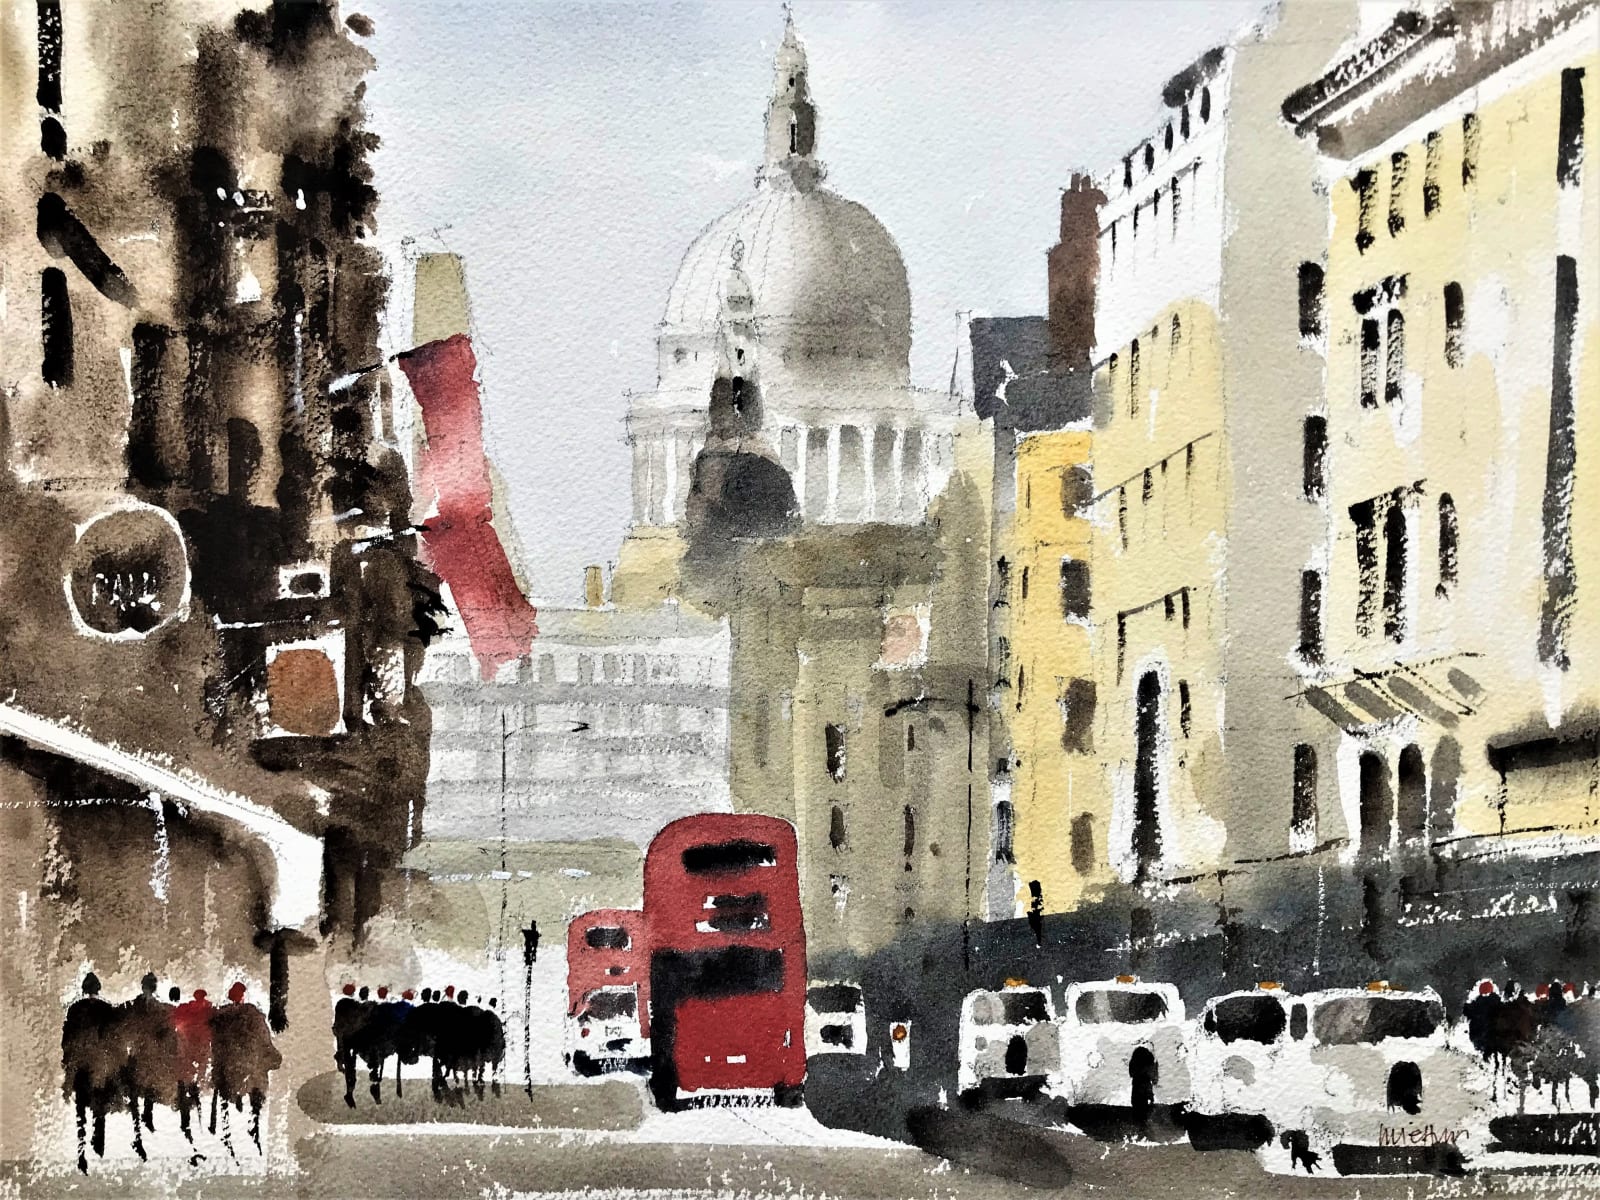 Mike Jeffries, fleet street, london